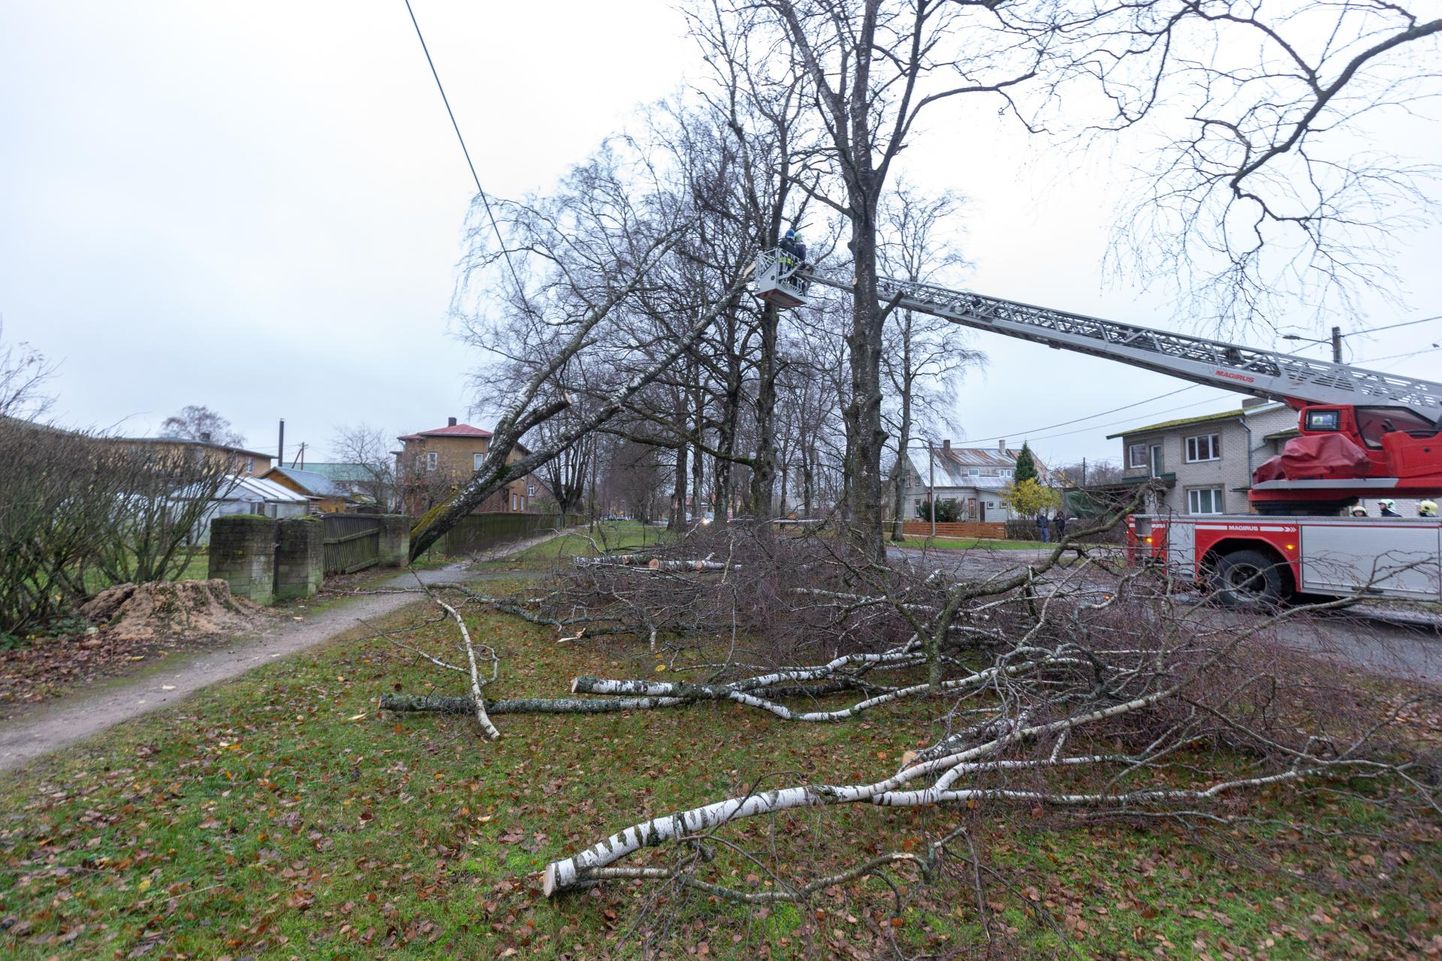 Elektrikatkestuste tekkimise peapõhjus olid puud, mis kukkusid elektriliinidele. Pilt on tehtud 27. oktoobril Viljandis.